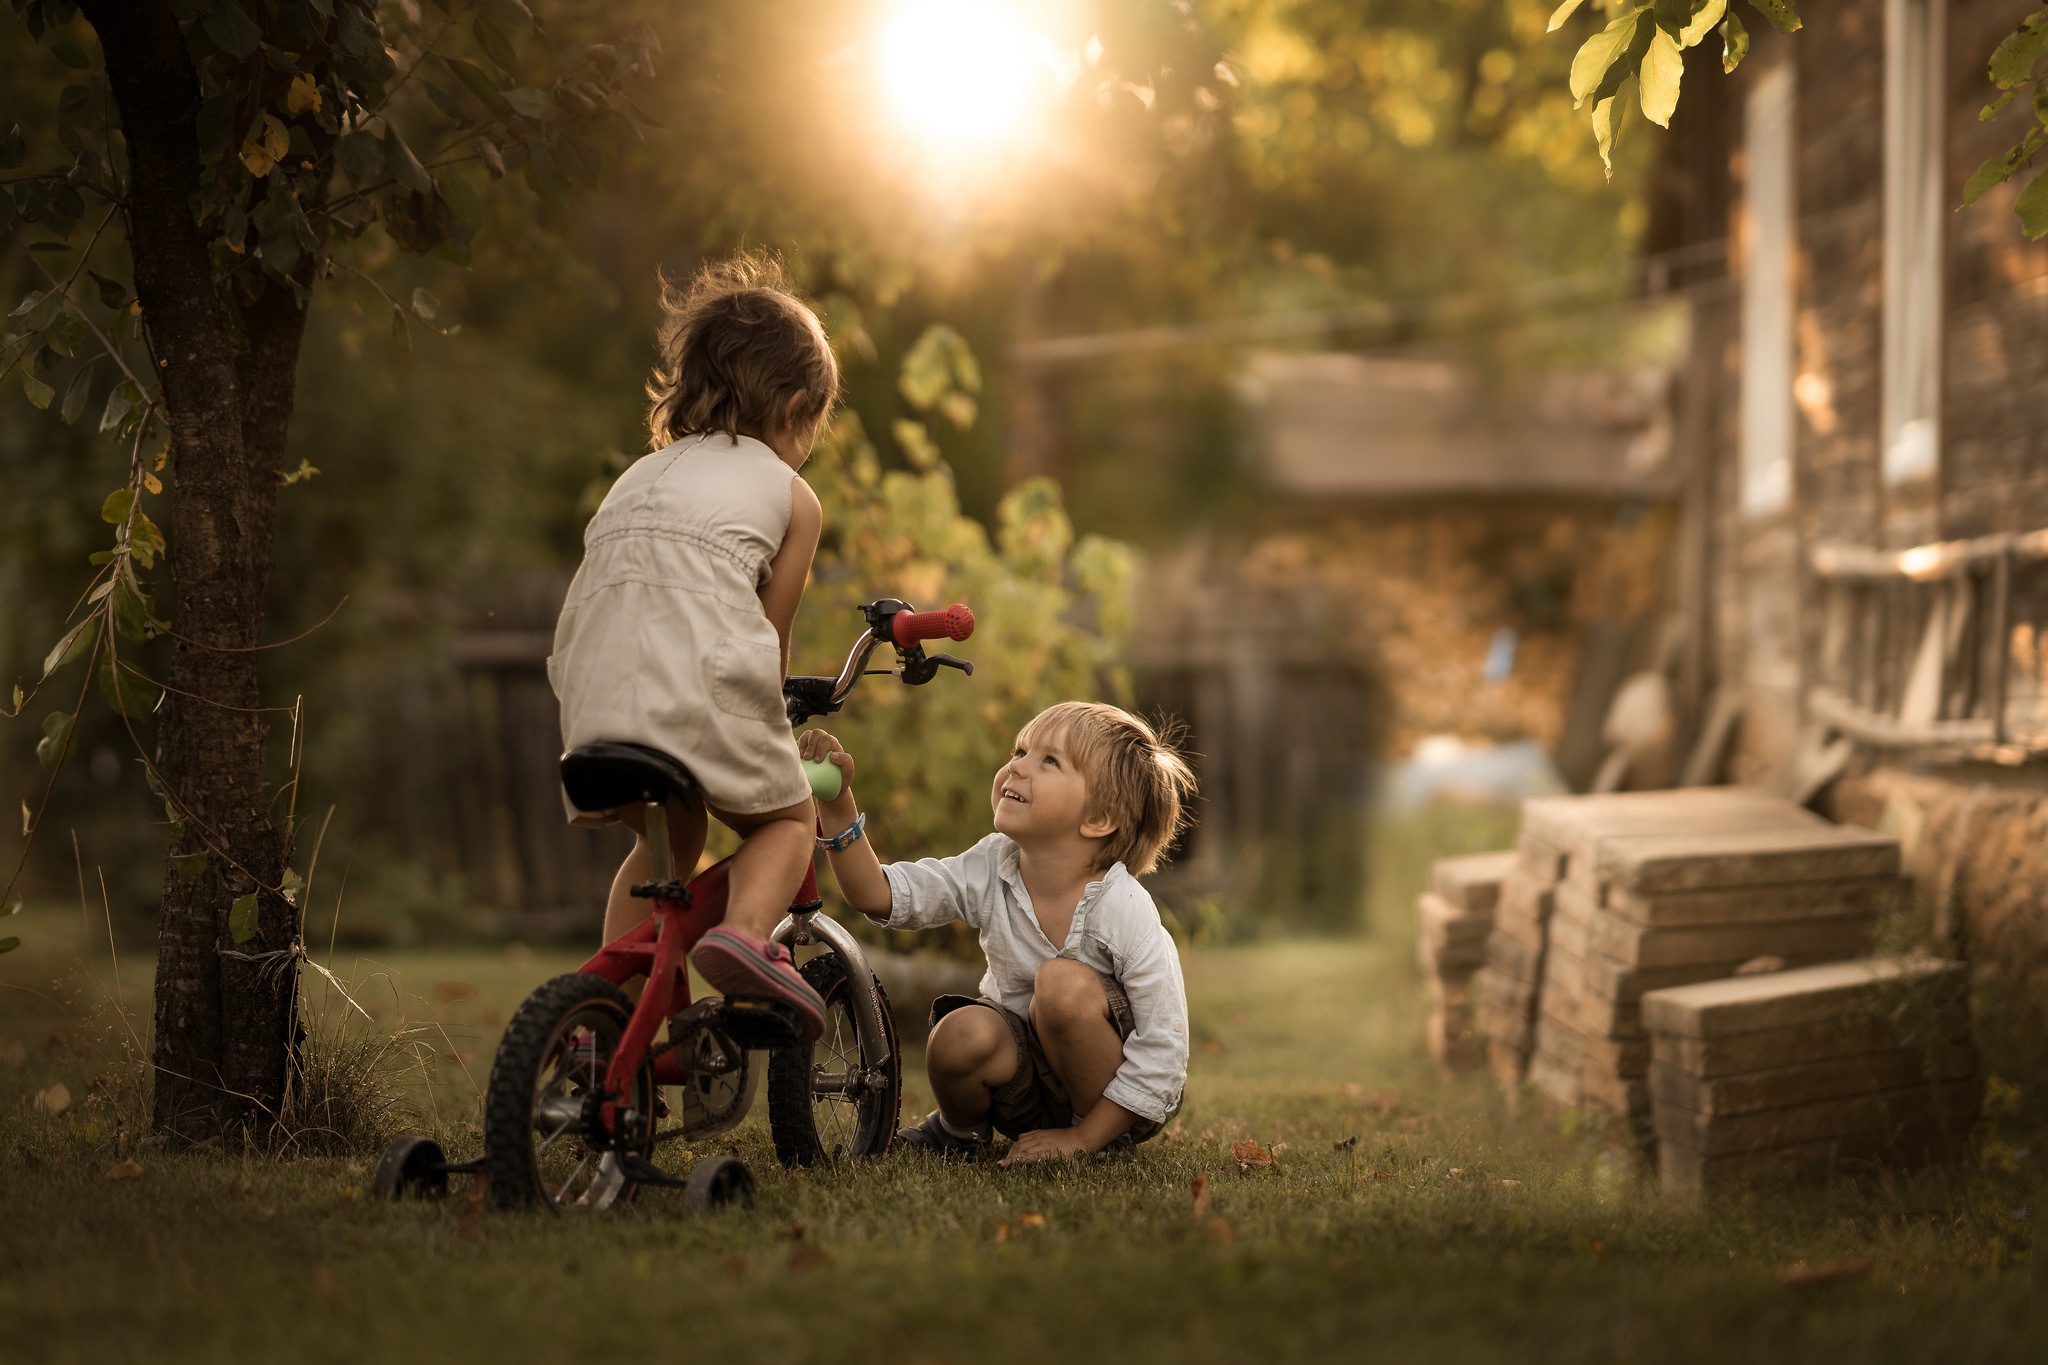 С появлением детей жизнь. Детство. Беззаботное детство. Дети на велосипедах в деревне. Мальчик и девочка на велосипеде.